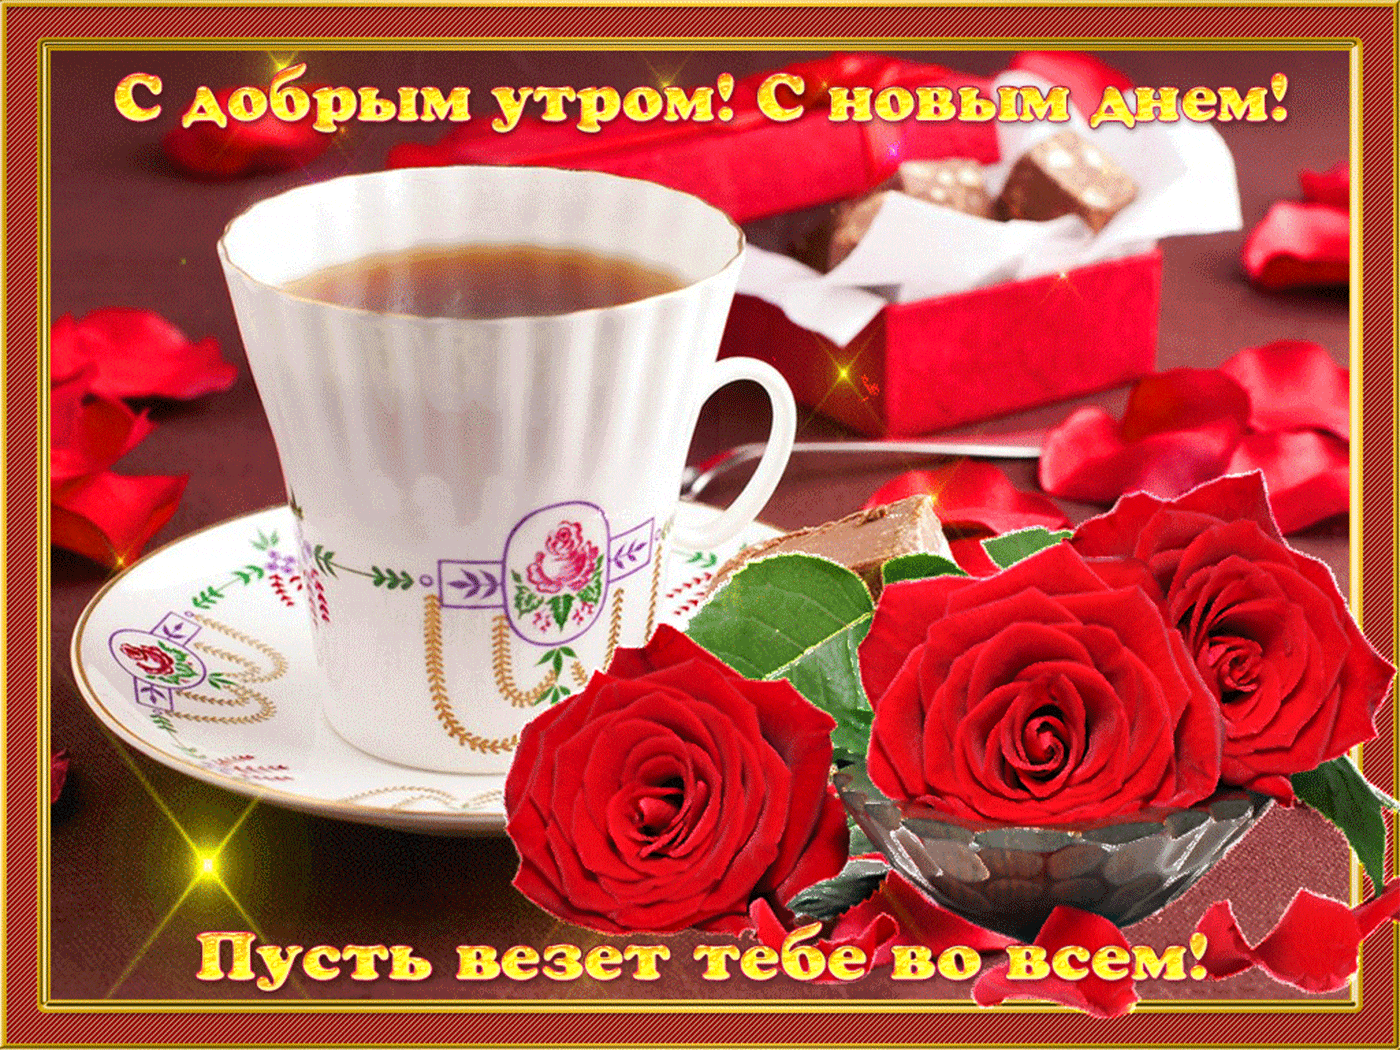 Самого доброго утра друзьям. Пожелания доброго утра. Открытки с добрым утром. Доброе утро прекрасного дня. Красивые поздравления с добрым утром.